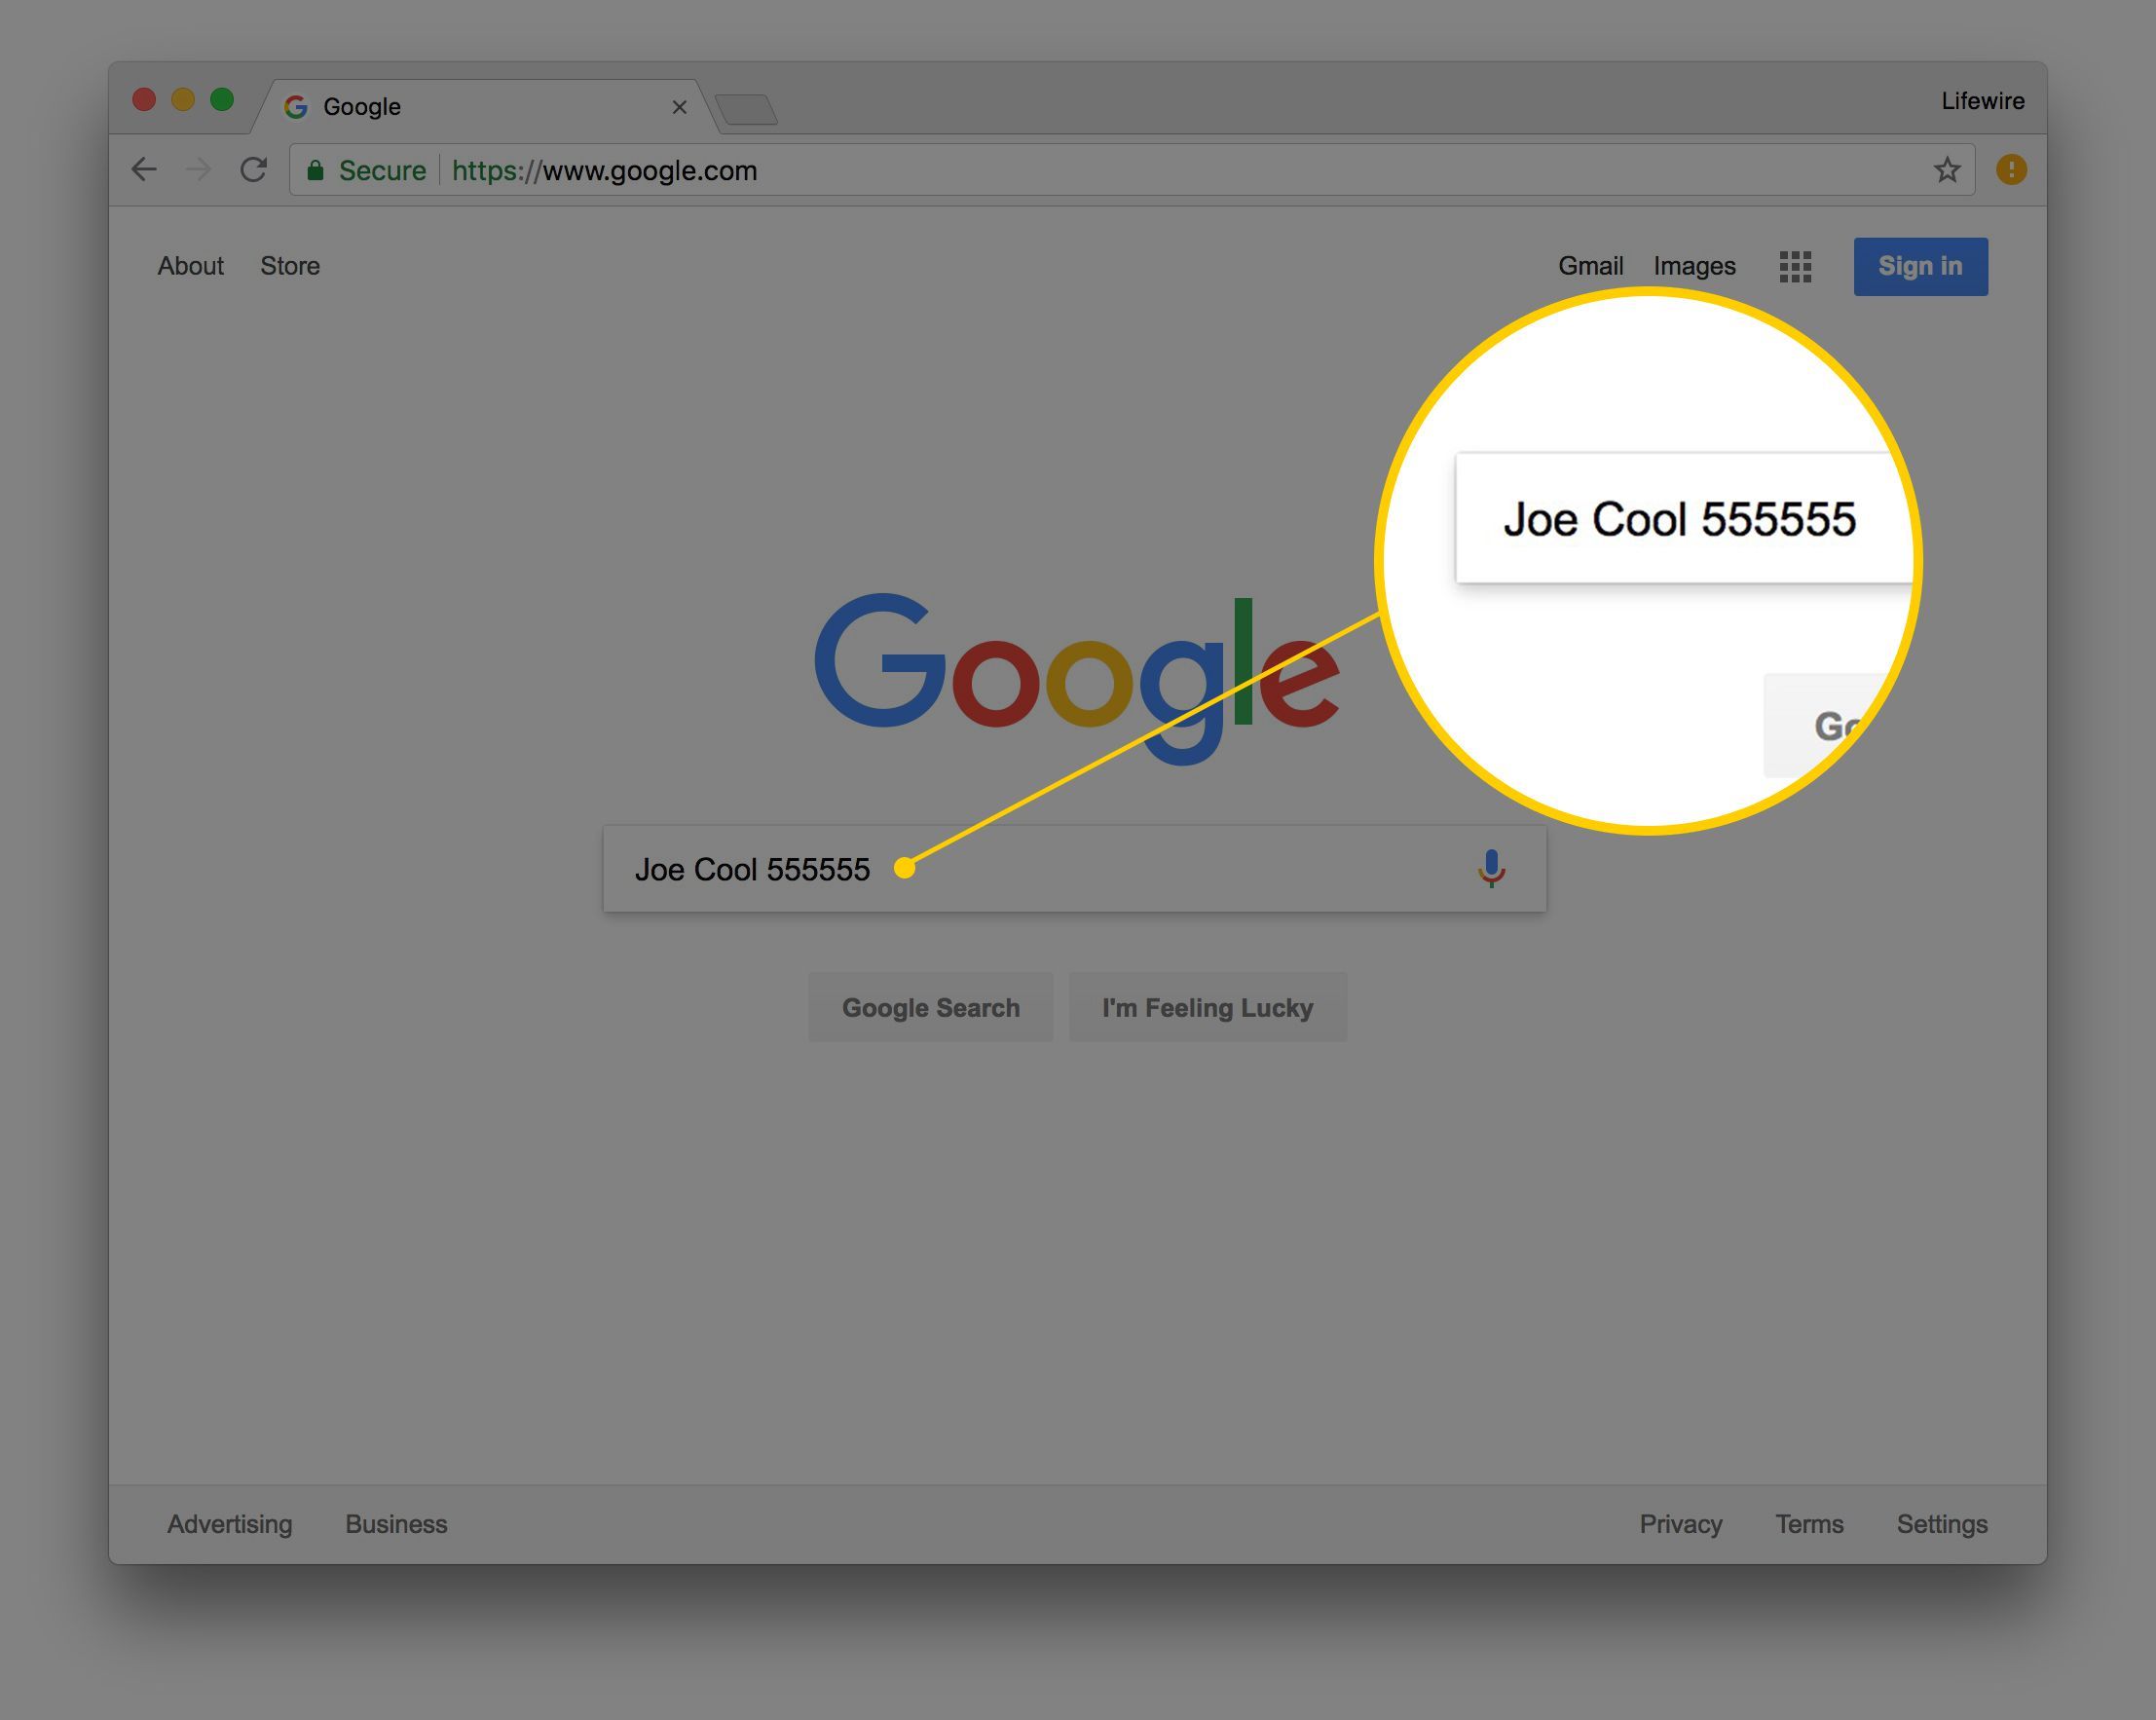 Снимок экрана: полное имя плюс почтовый индекс в поле поиска Google